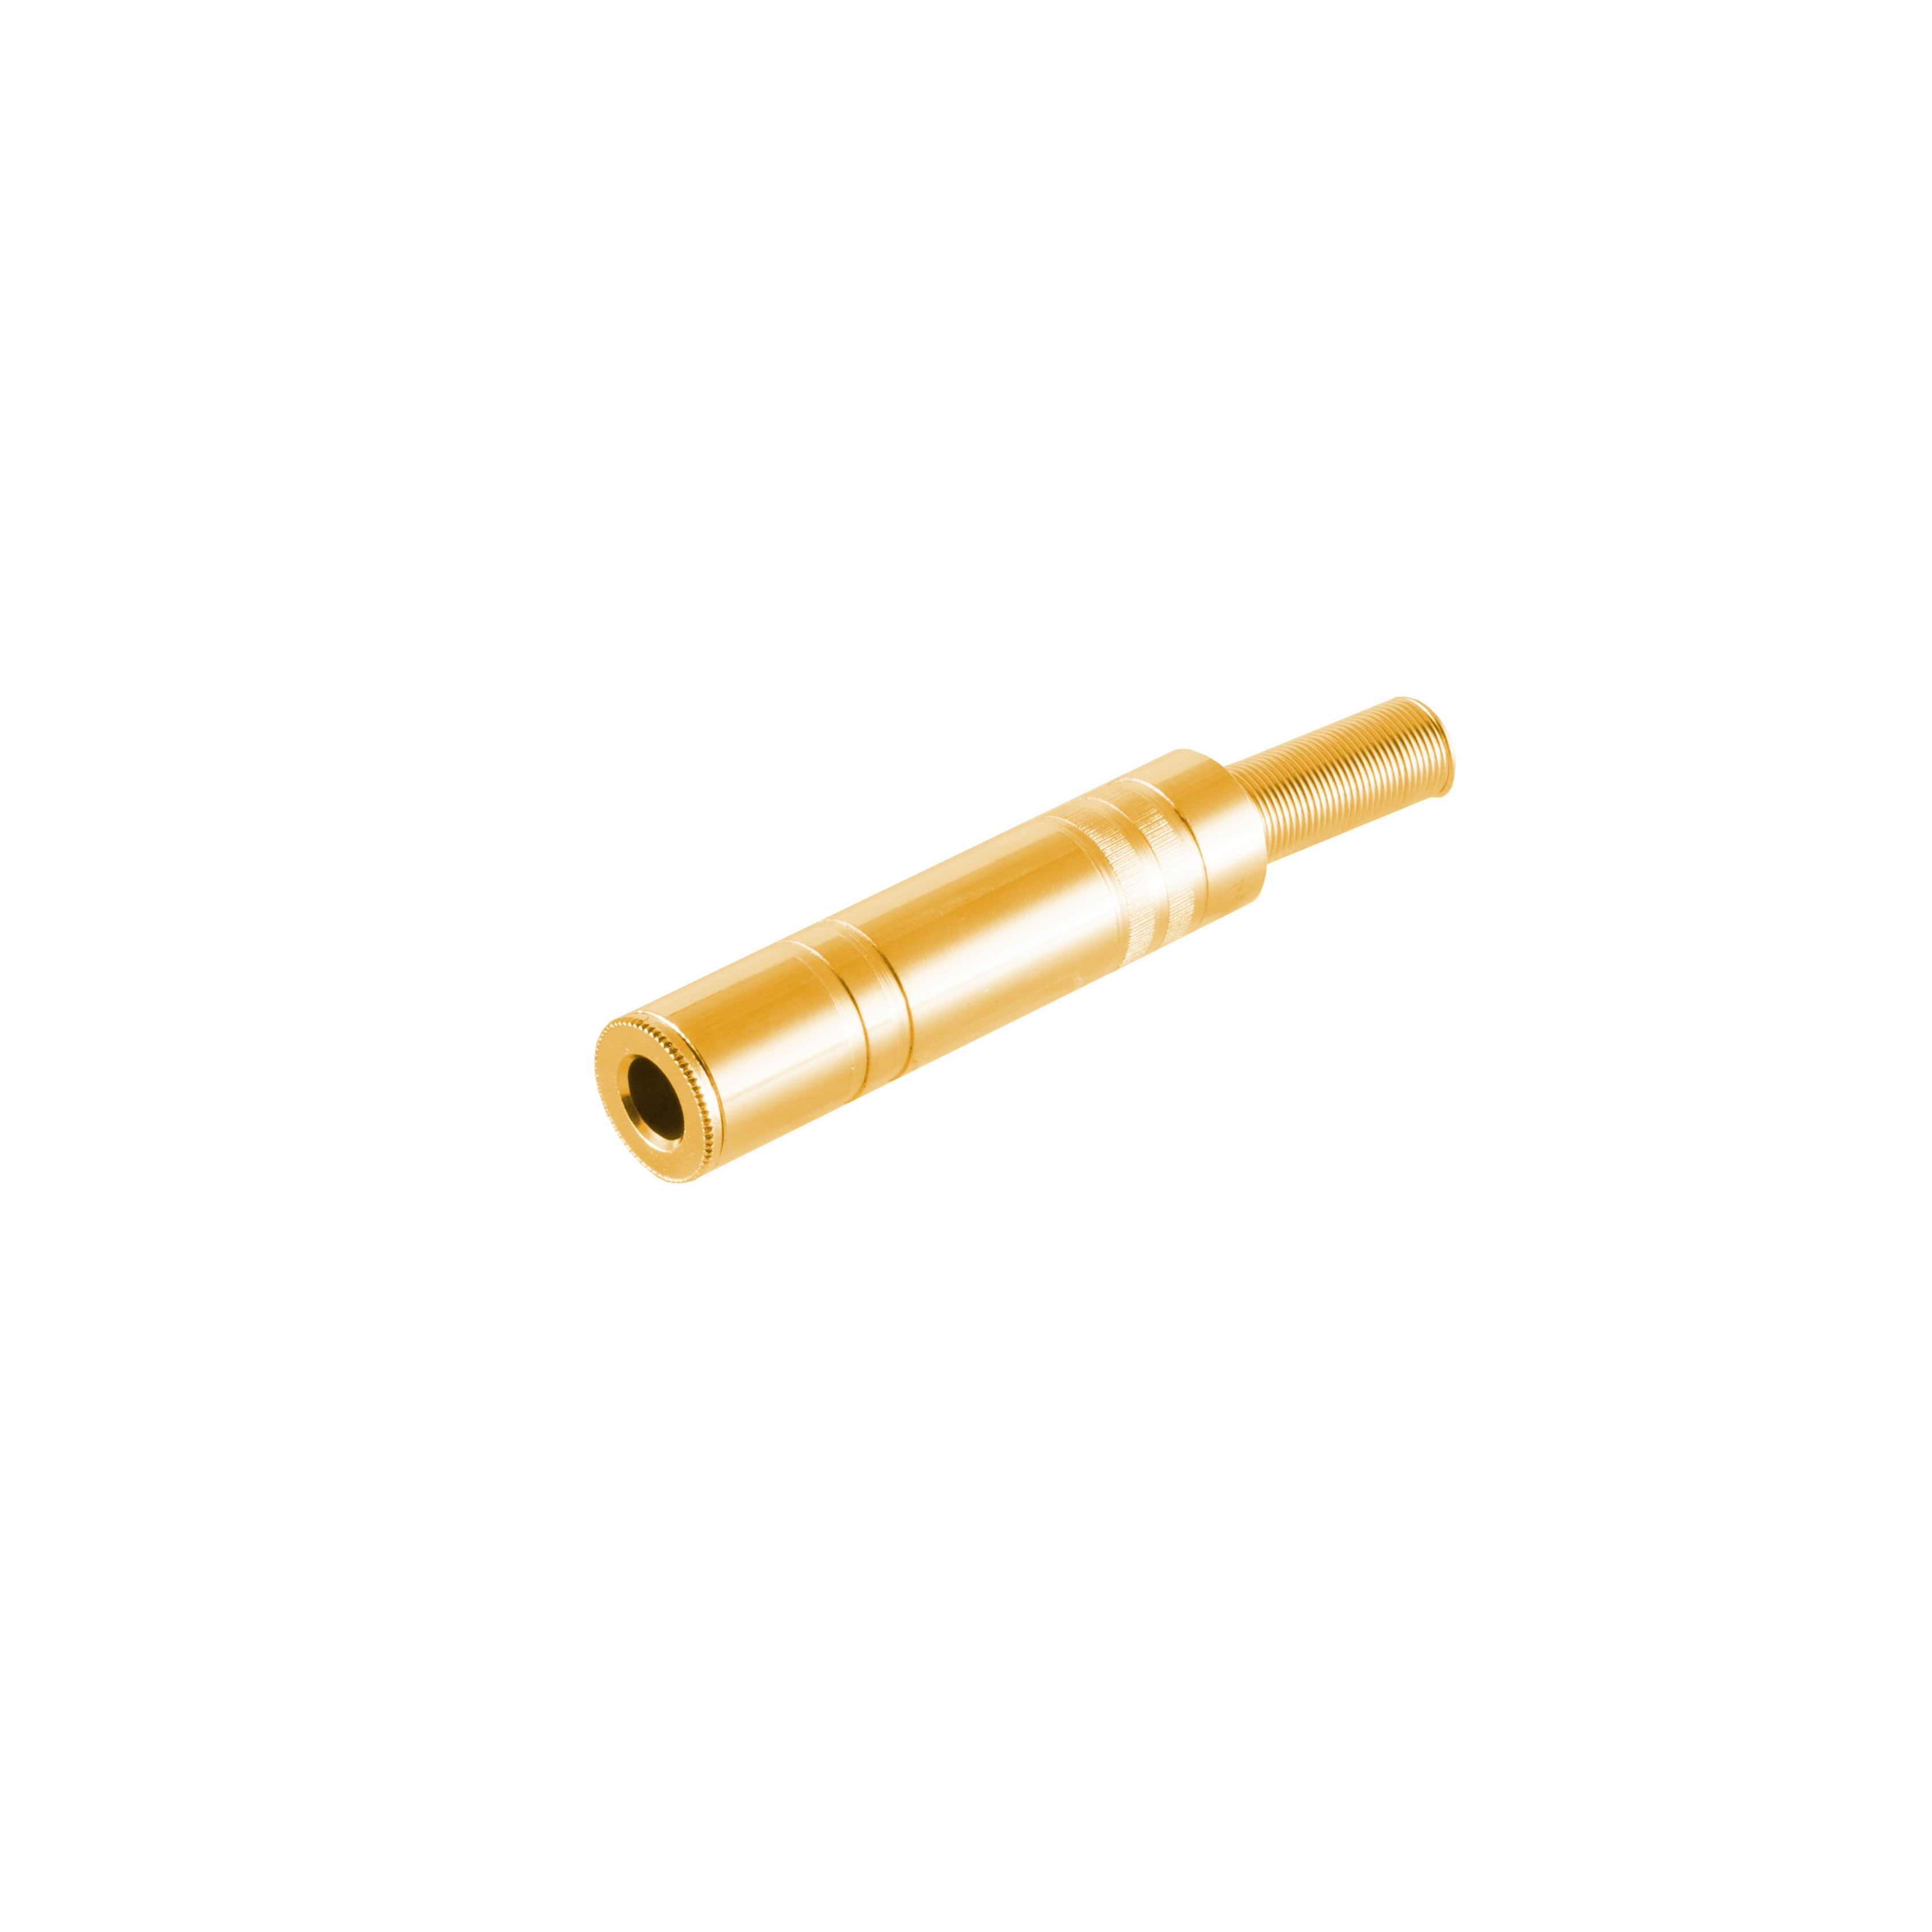 Stereo KABELBUDE 6,3mm, Metall, vergoldet Klinkenkupplung Klinke